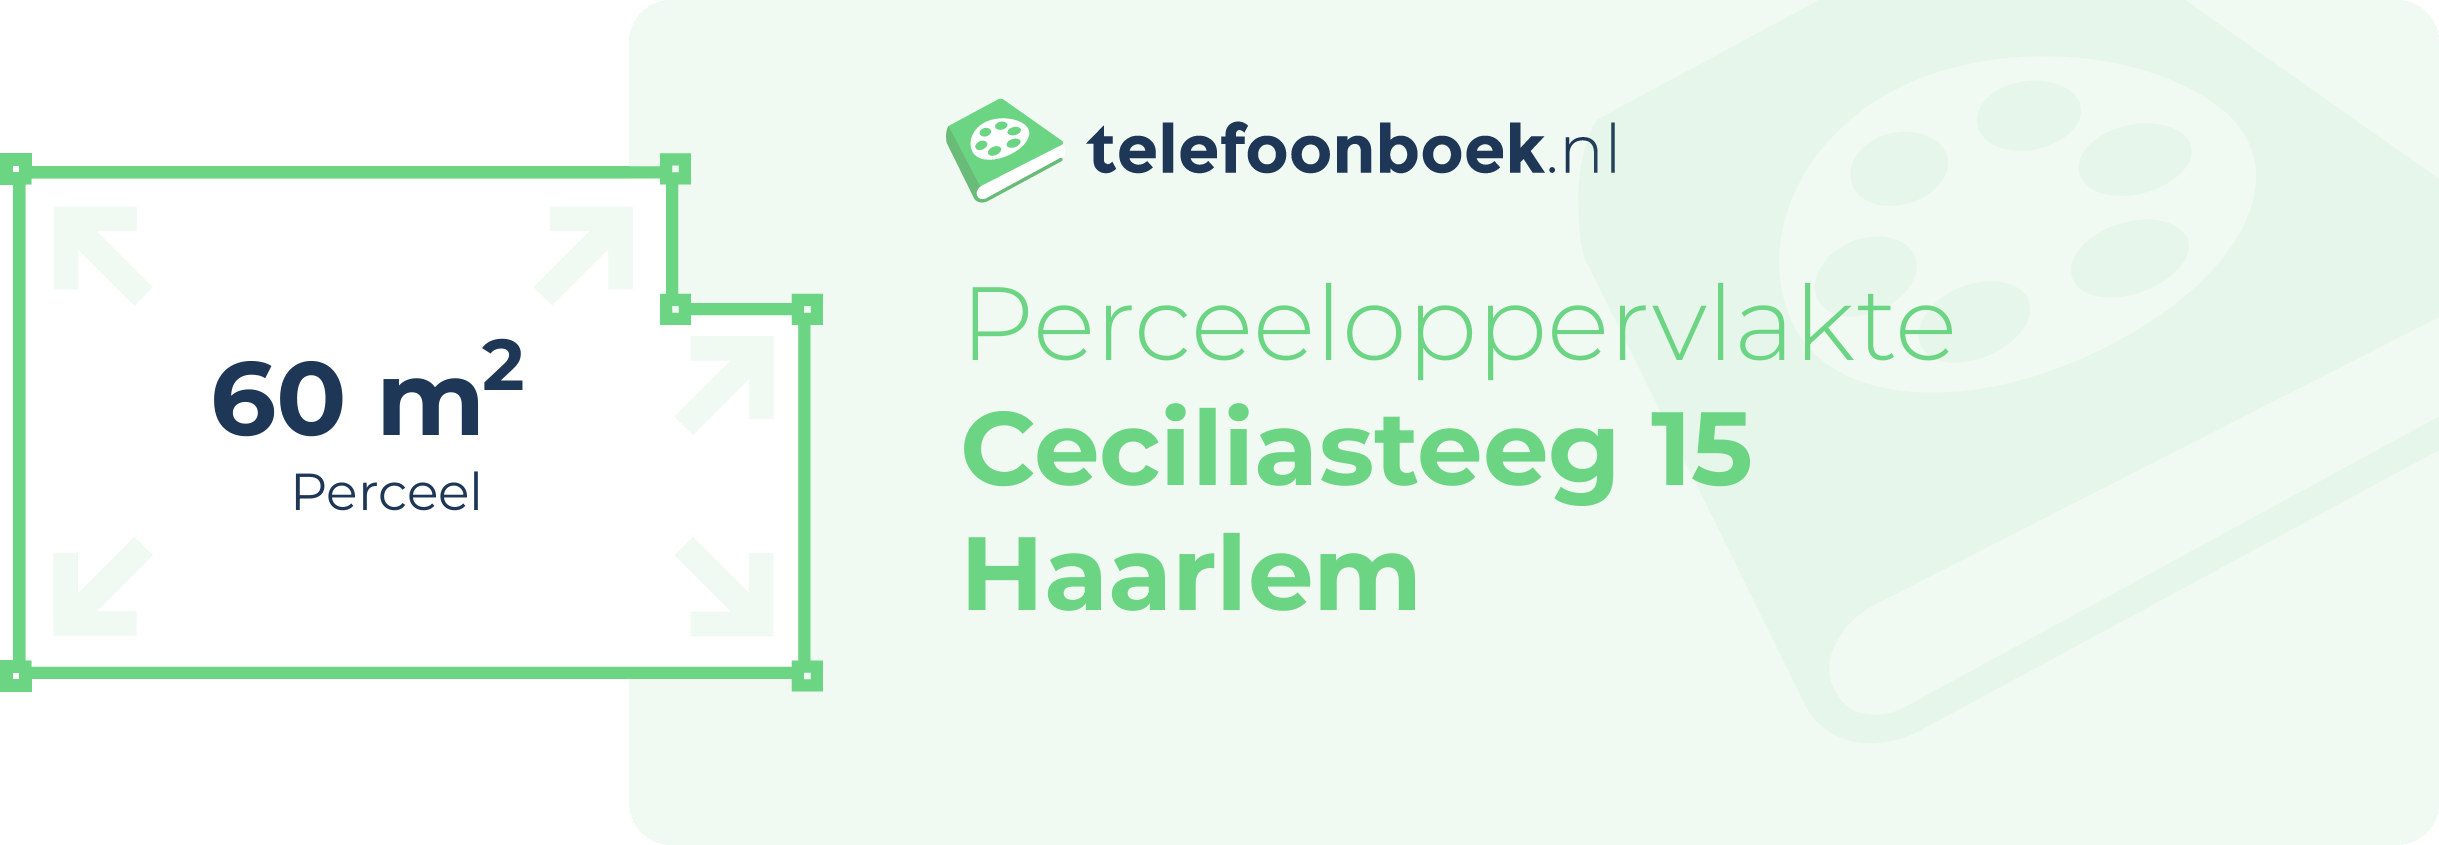 Perceeloppervlakte Ceciliasteeg 15 Haarlem